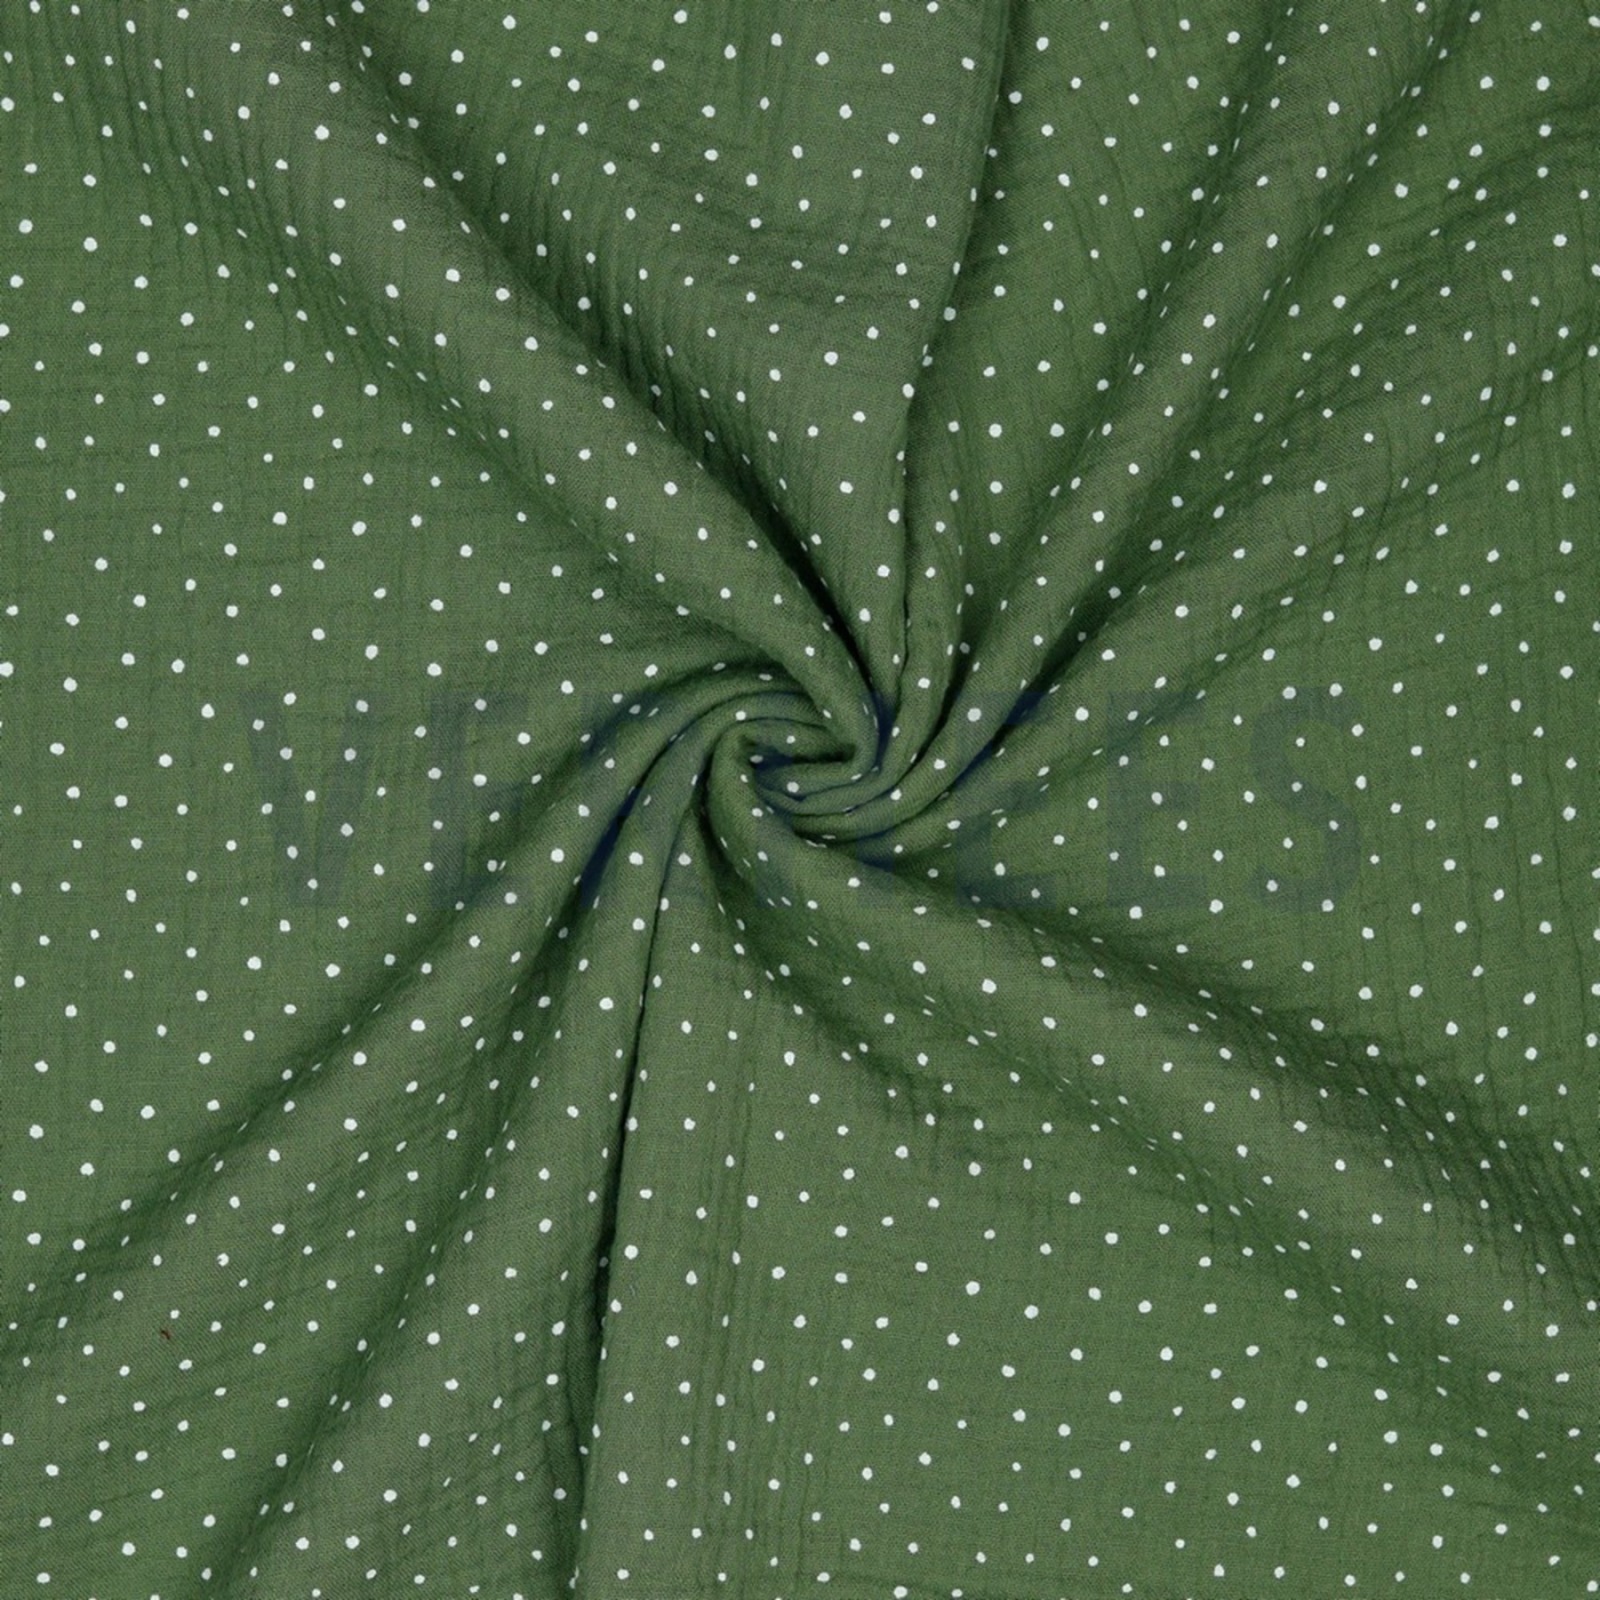 Musselin 960 EUR/m khaki grün mit kleinen weißen Punkten Double Gauze Windelstoff Stoff Meterware